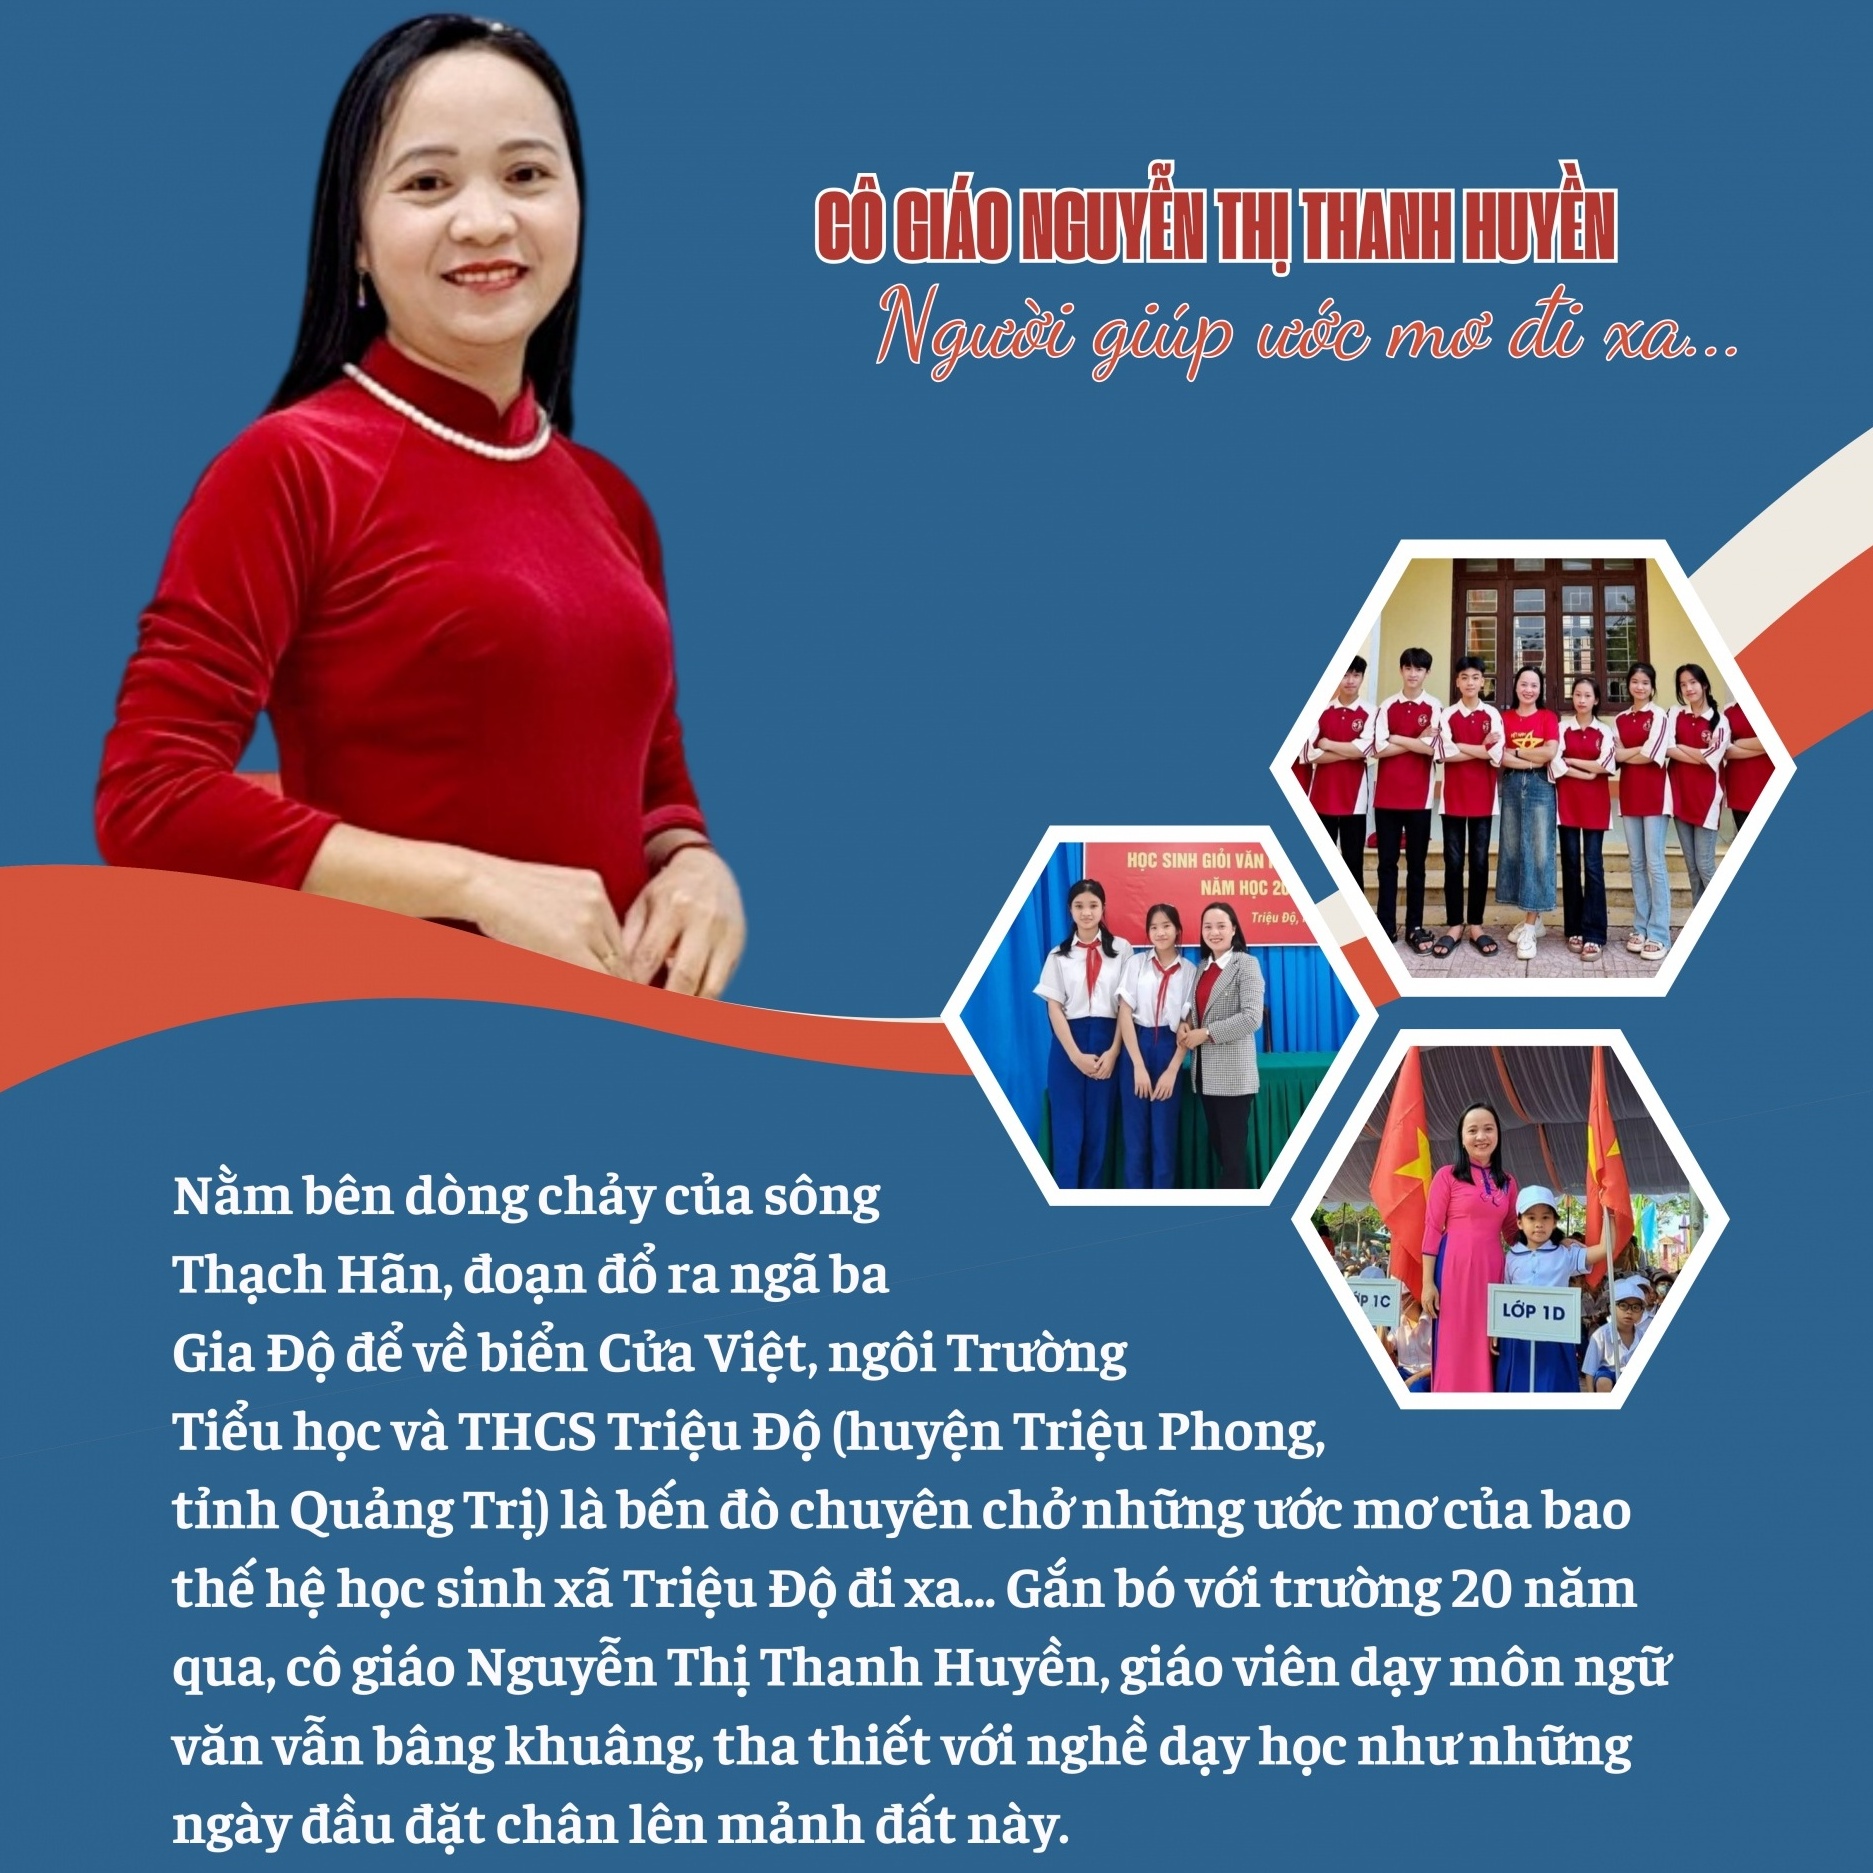 Cô giáo Nguyễn Thị Thanh Huyền - Người giúp ước mơ đi xa…